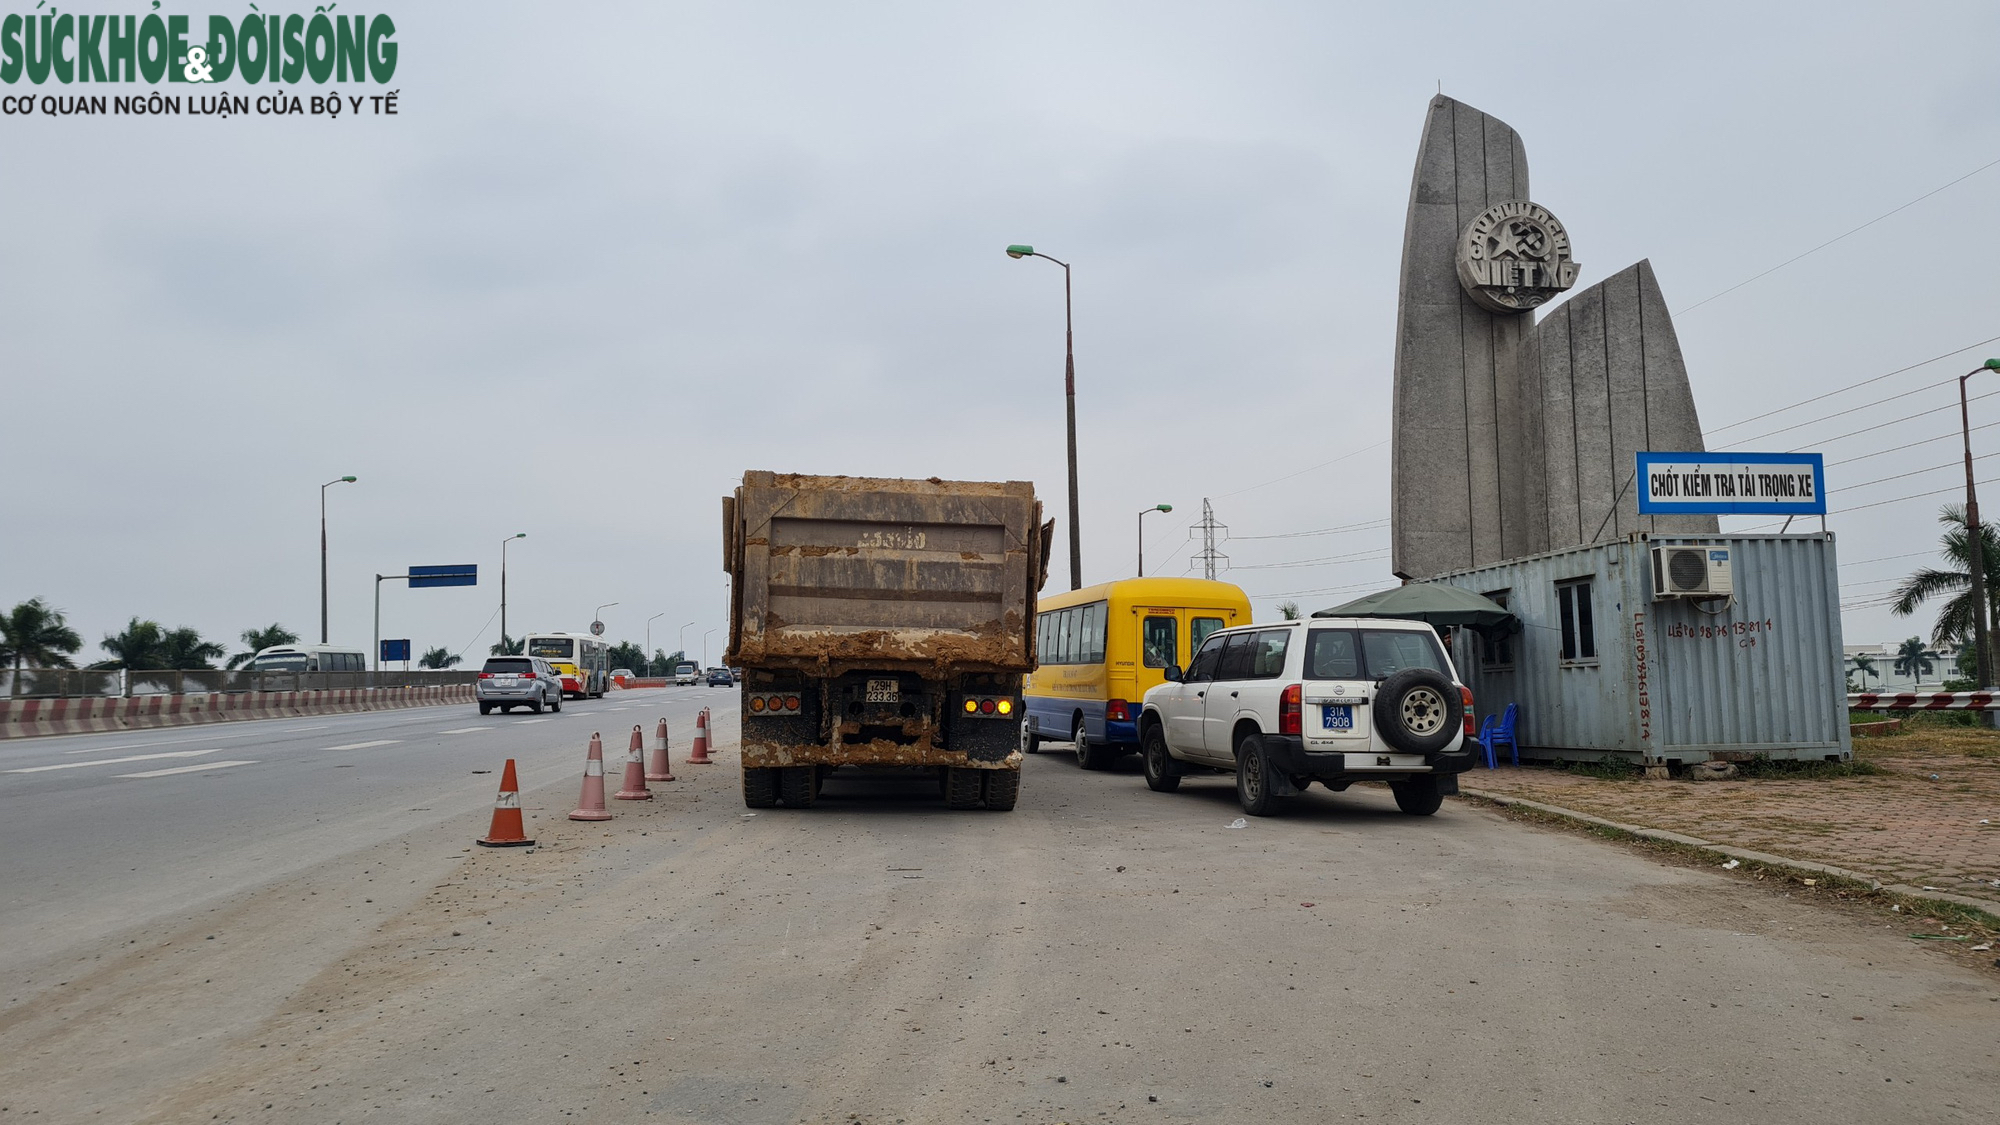 Ám ảnh xe cơi thùng, có ngọn “thả cửa” hoạt động trên cầu Thăng Long - Ảnh 7.